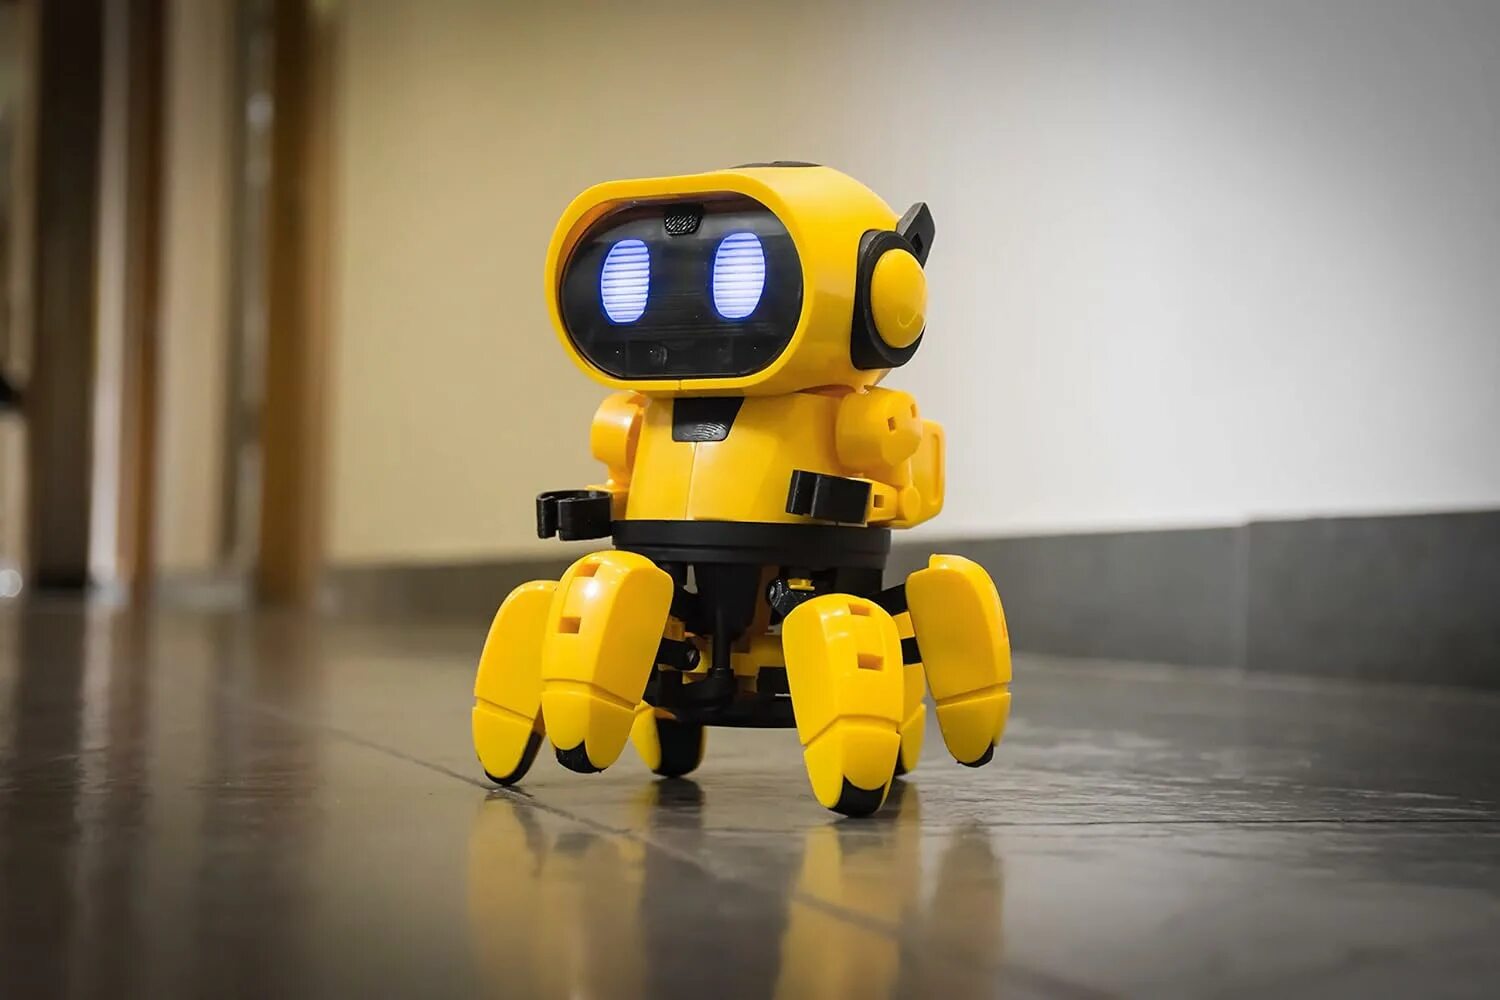 Малыш в желтом робот. Тобби 2 робот. Желтый робот Тоби. Конструктор робототехника робот Железяка. Собака Тобби робот.